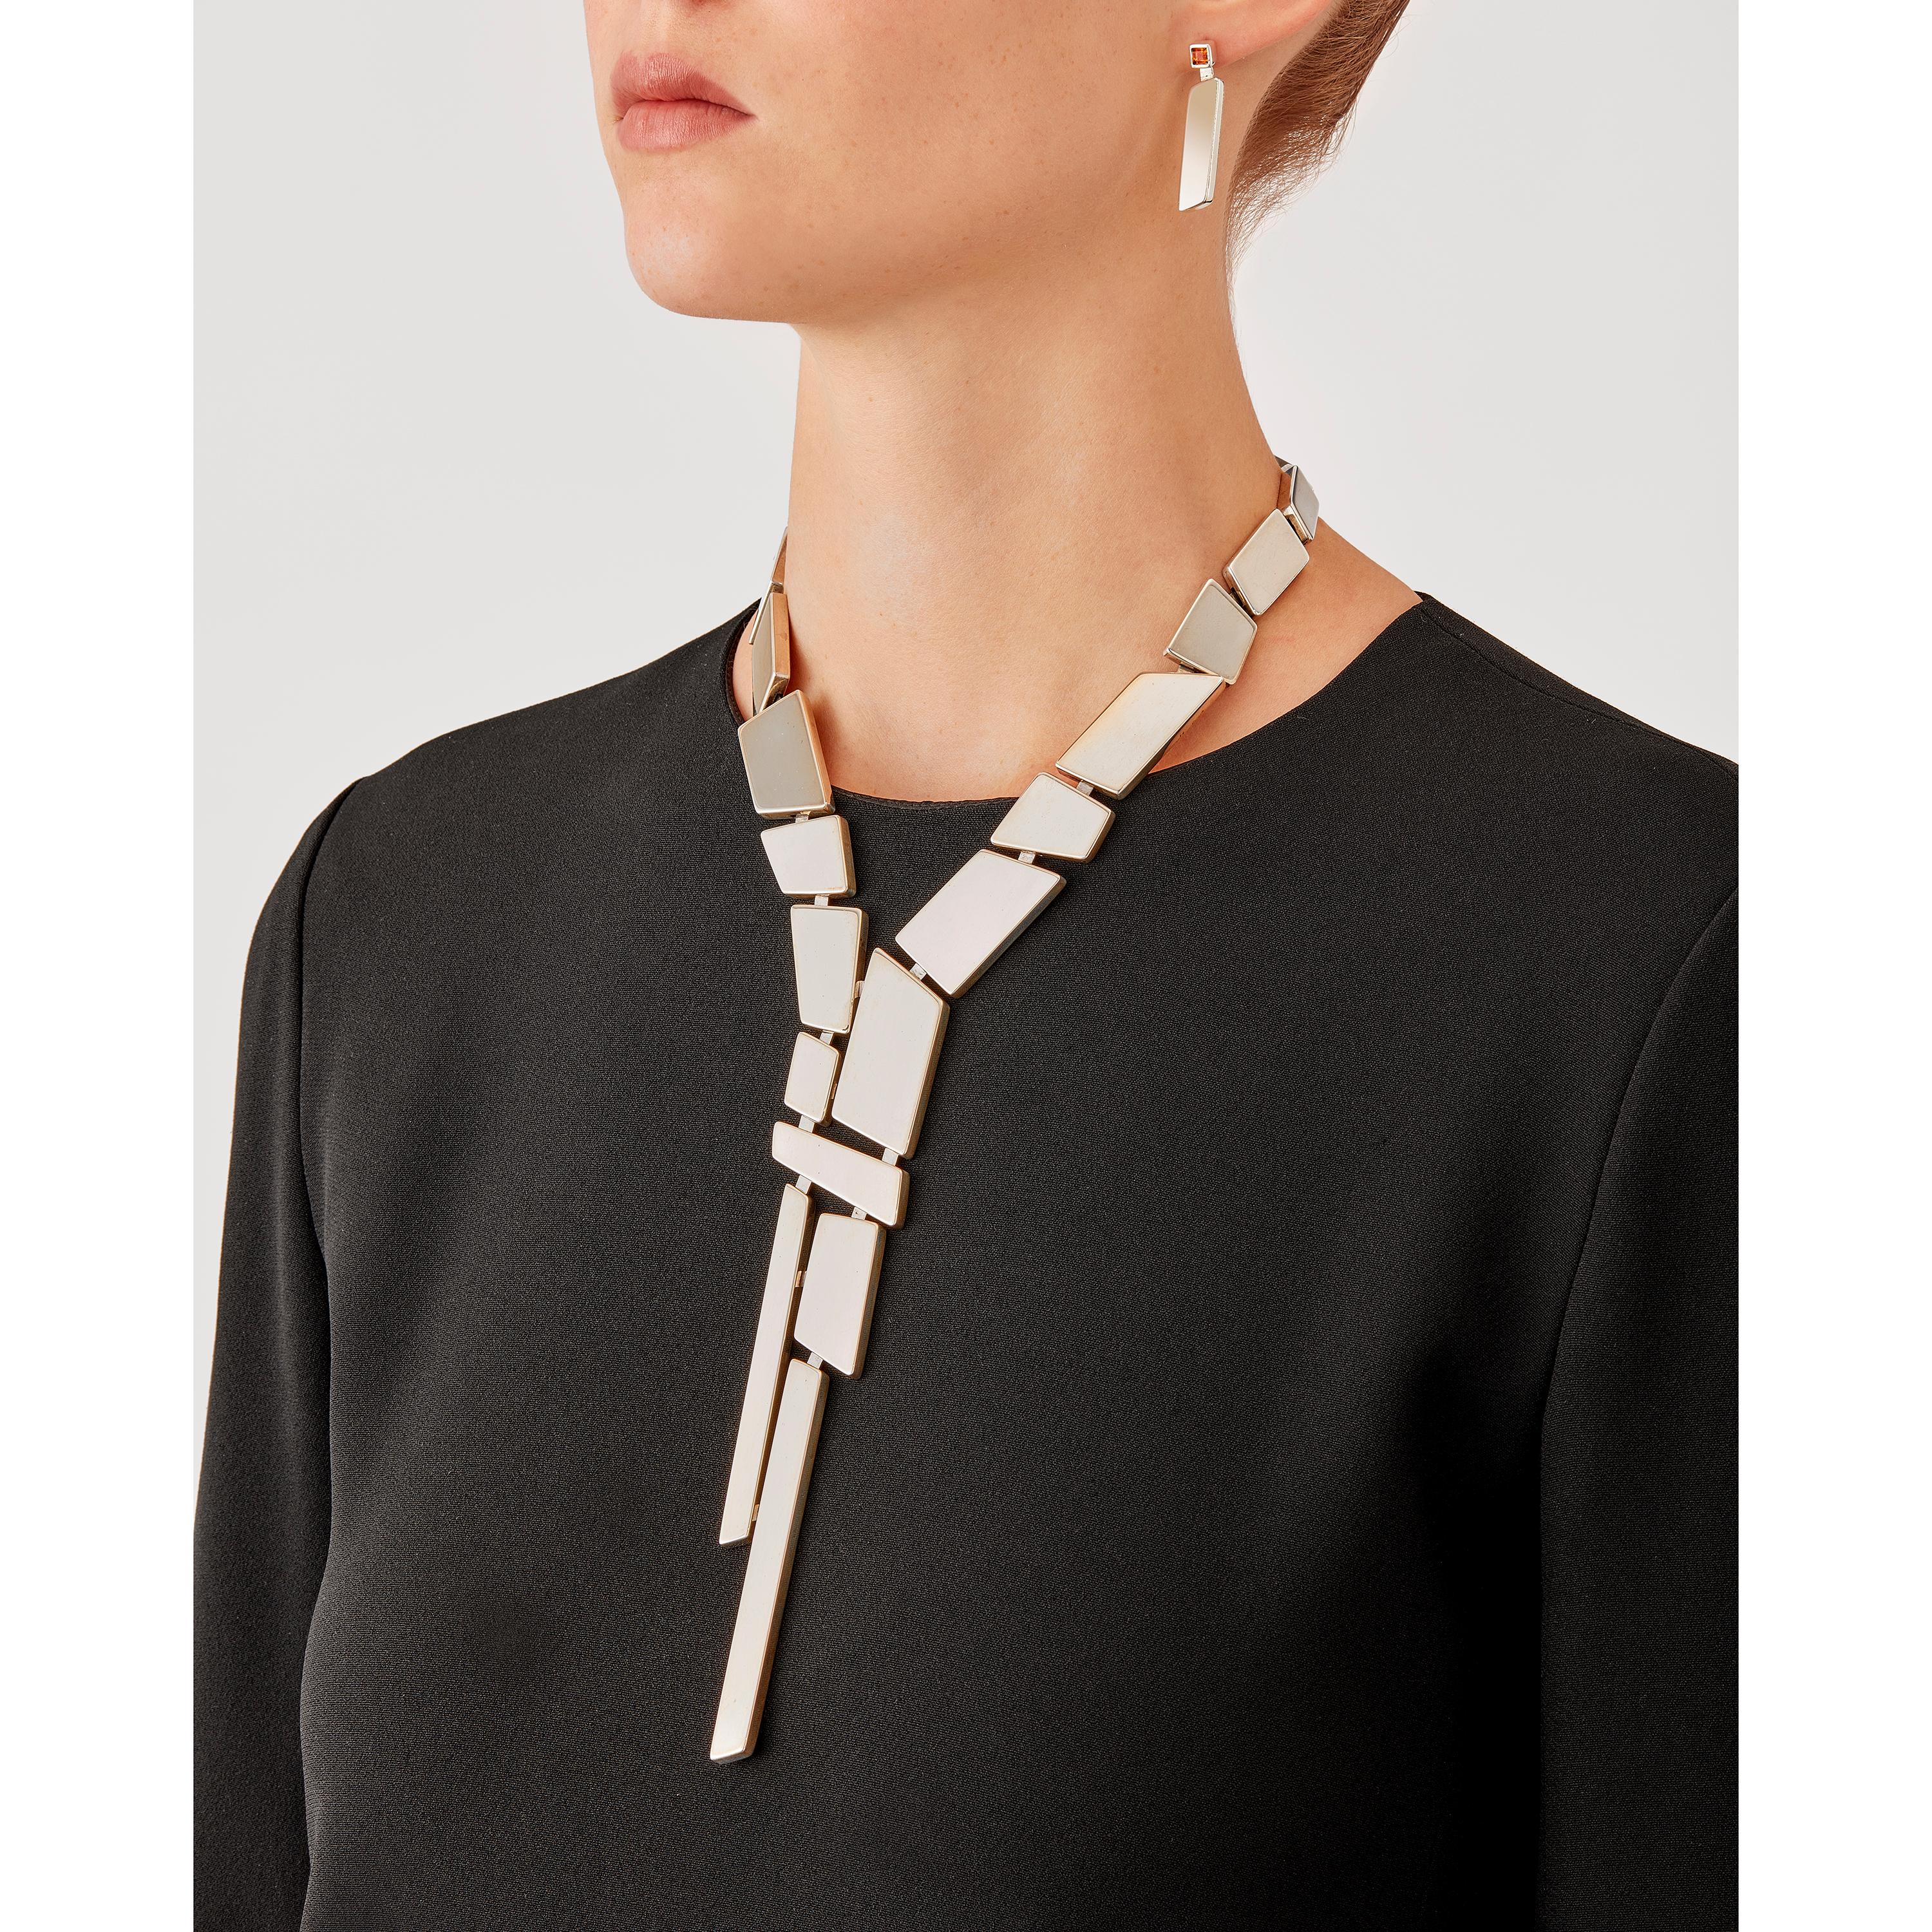 Die in limitierter Auflage im Mailänder Atelier von Nathalie Jean handgefertigte Krawattenkette Saphir Absolu besteht aus leichten geometrischen Hohlkörpern mit abgerundeten Kanten aus Sterlingsilber. Dank raffinierter, versteckter Glieder lassen